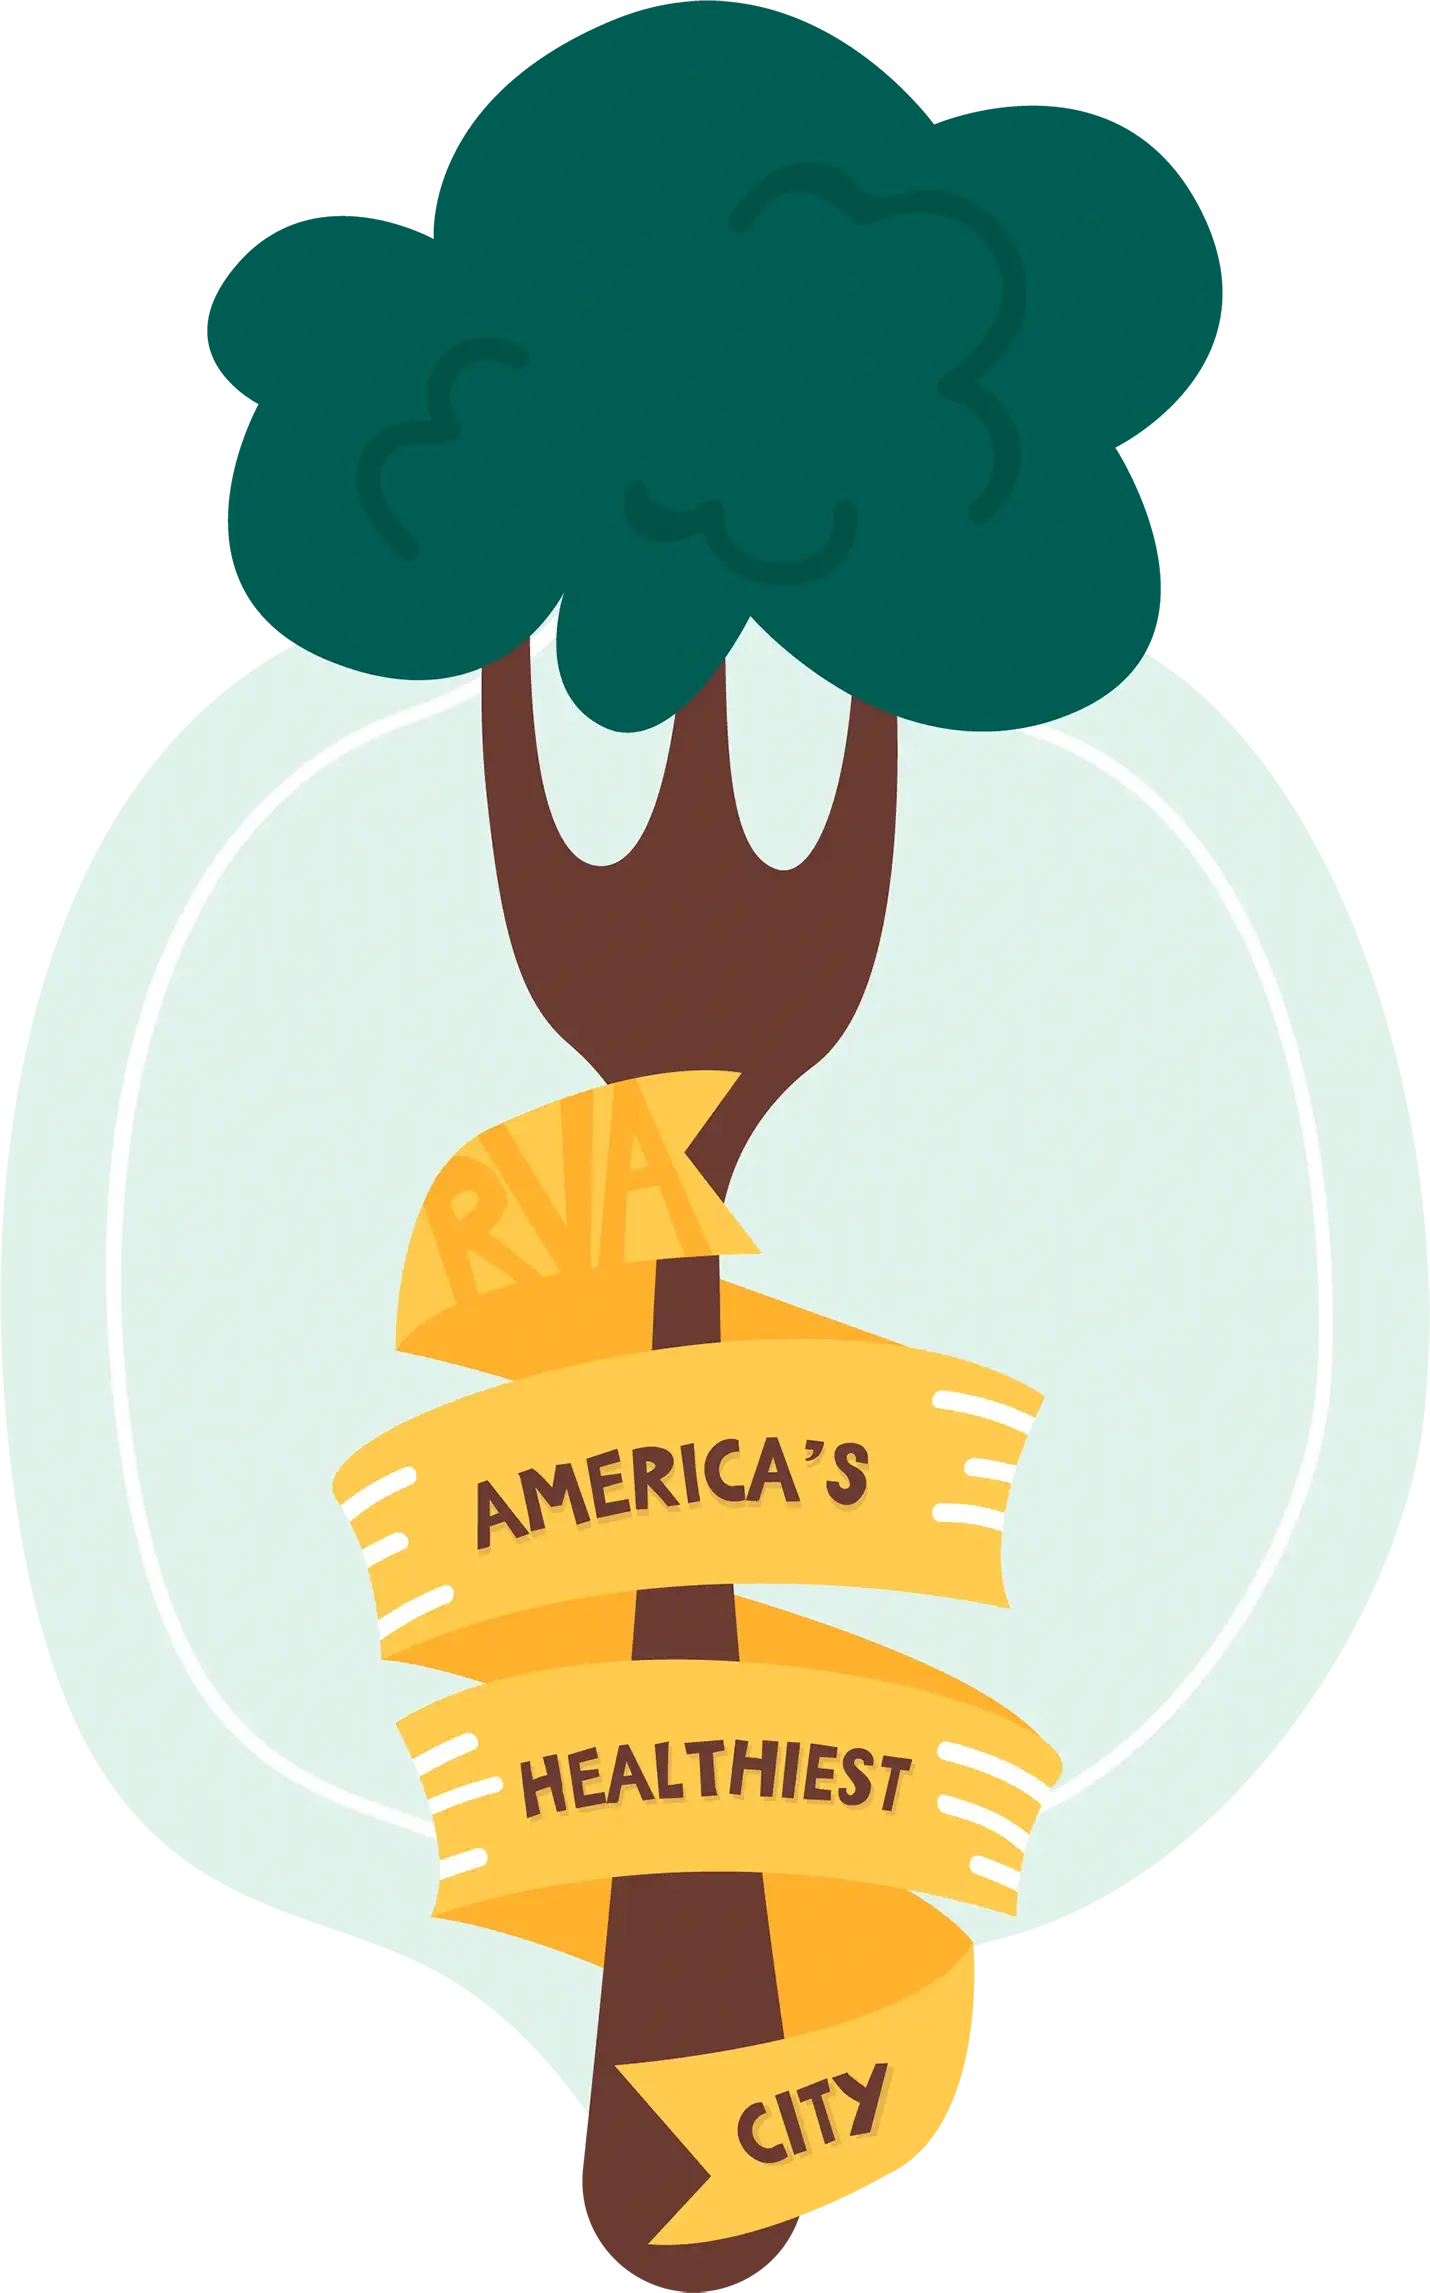 America's Healthiest City logo